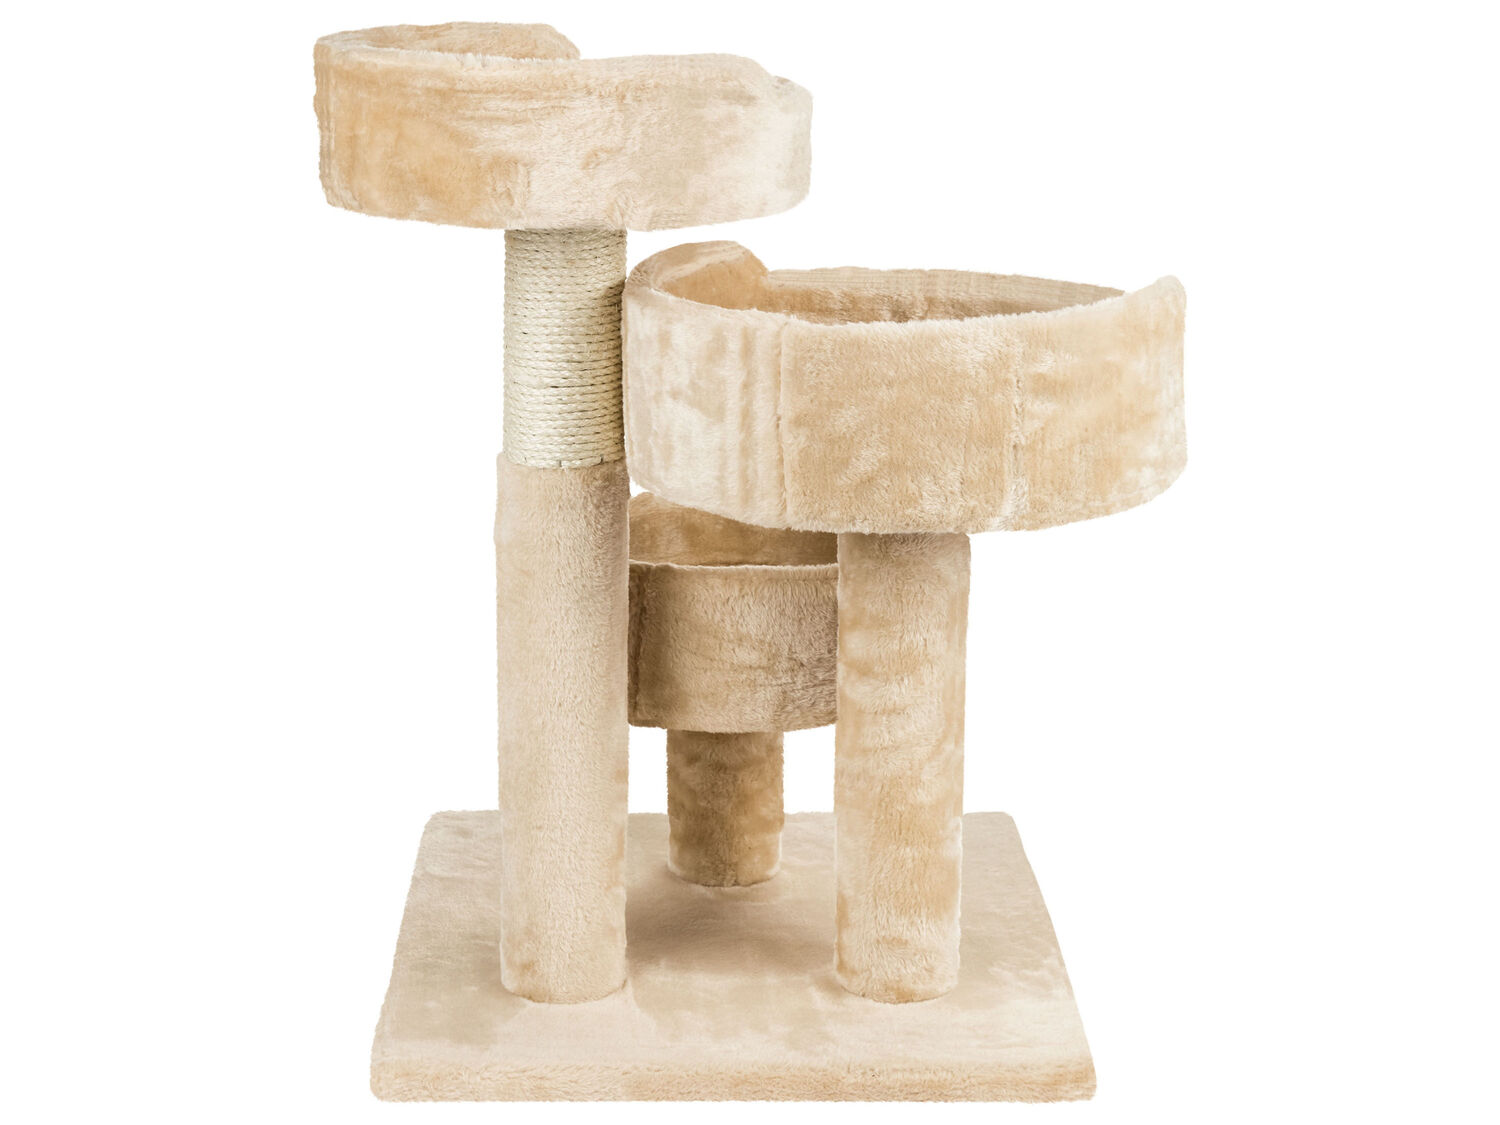 Tiragraffi a torre per gatti Zoofari, prezzo 39.99 € 
- Dimensione cestelli:
- ...